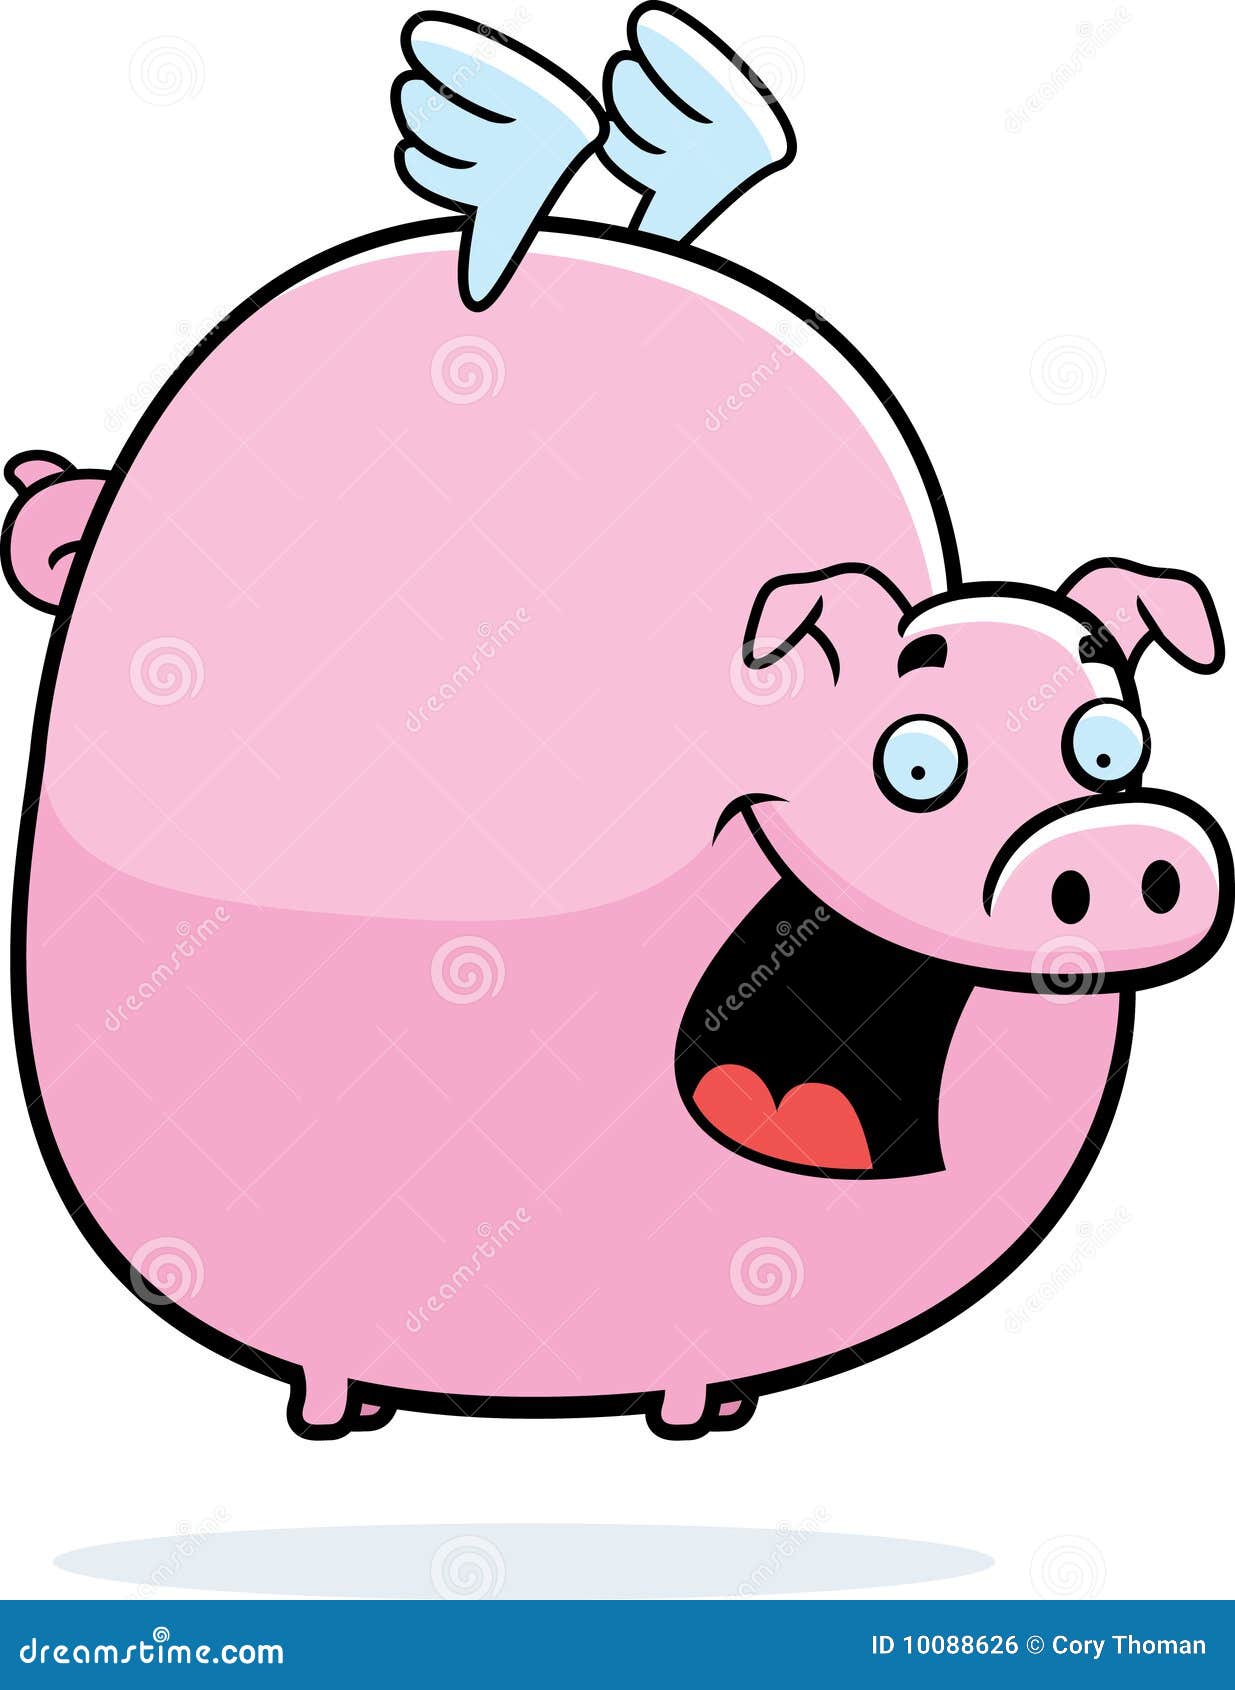 Cartoon Flying Pig Stock Illustrations – 1,113 Cartoon Flying Pig Stock  Illustrations, Vectors & Clipart - Dreamstime